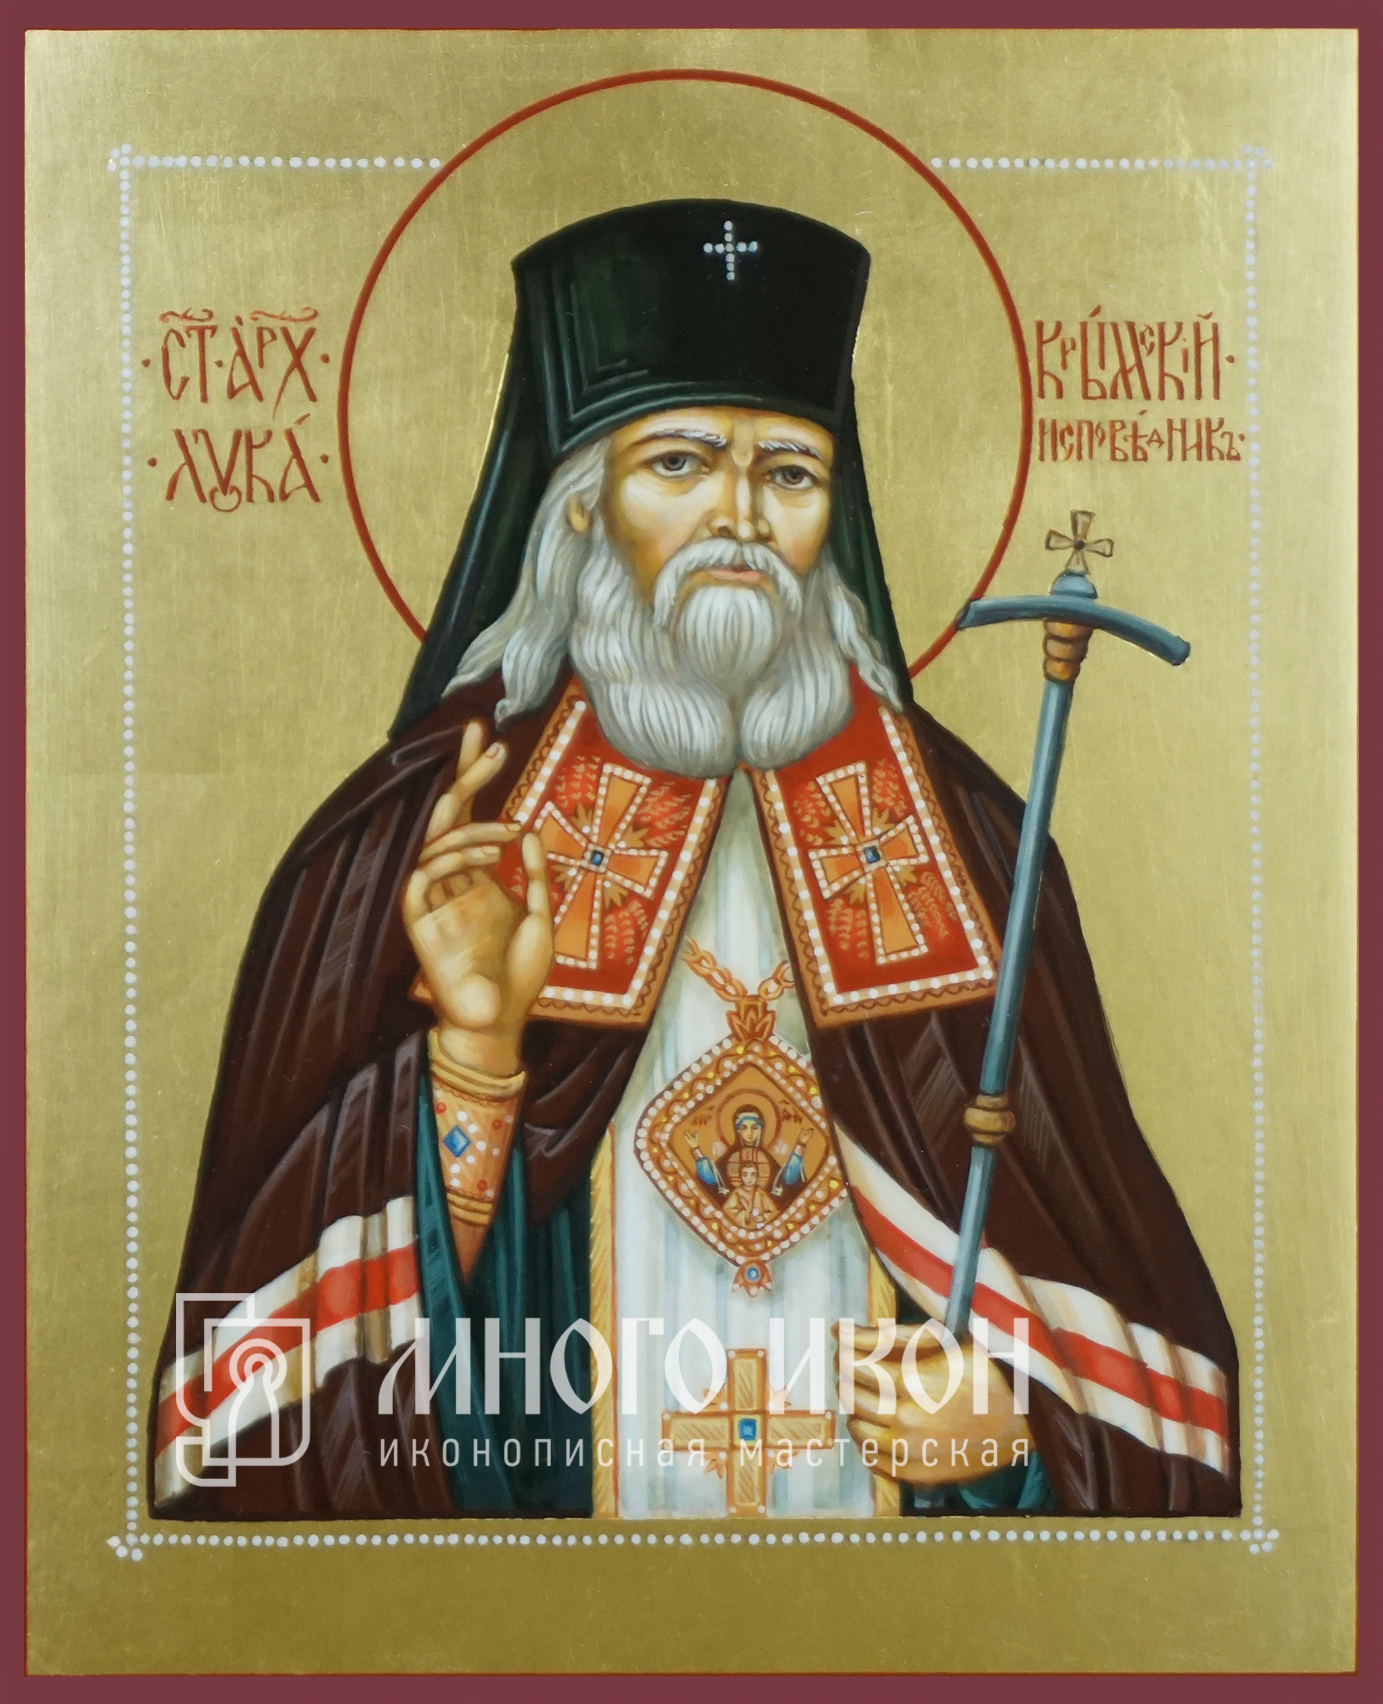 Акафист луке архиепископу крымскому святителю и исповеднику. Икона Луки Крымского.